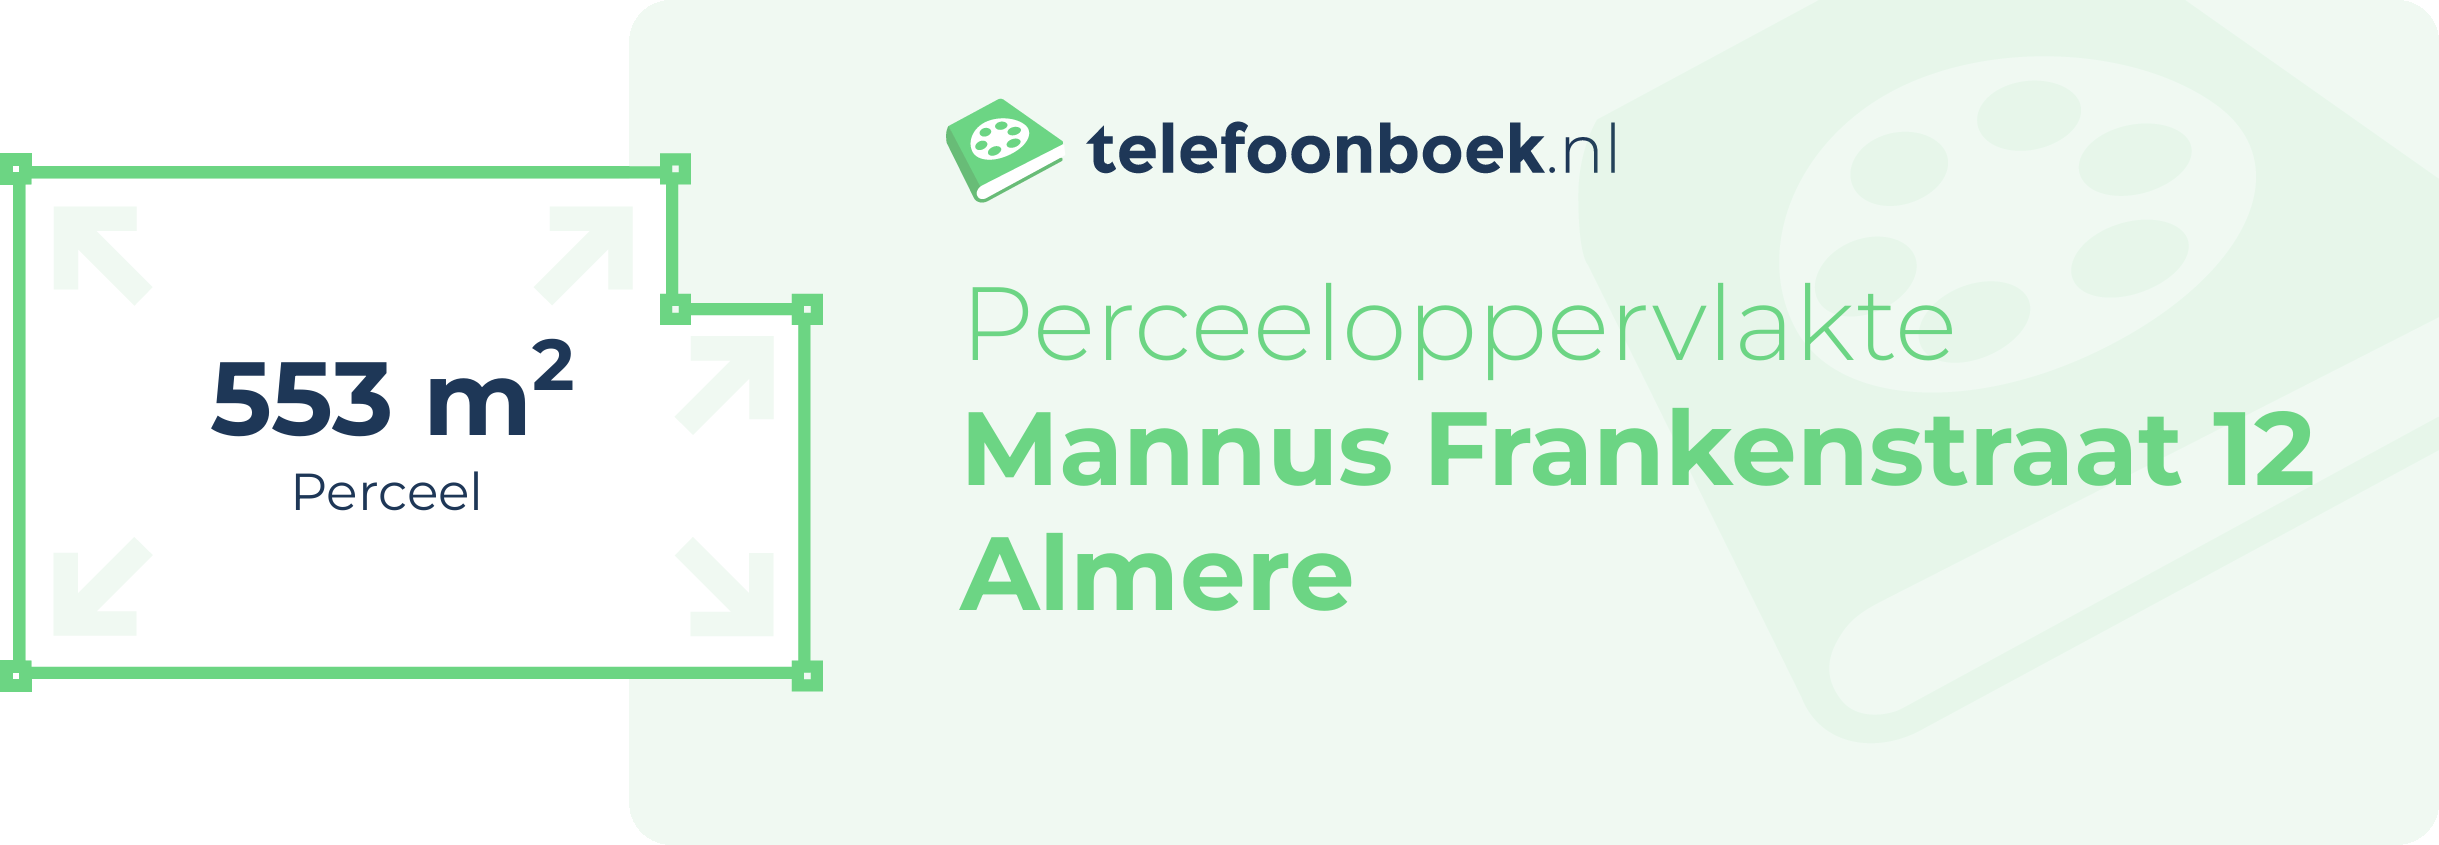 Perceeloppervlakte Mannus Frankenstraat 12 Almere